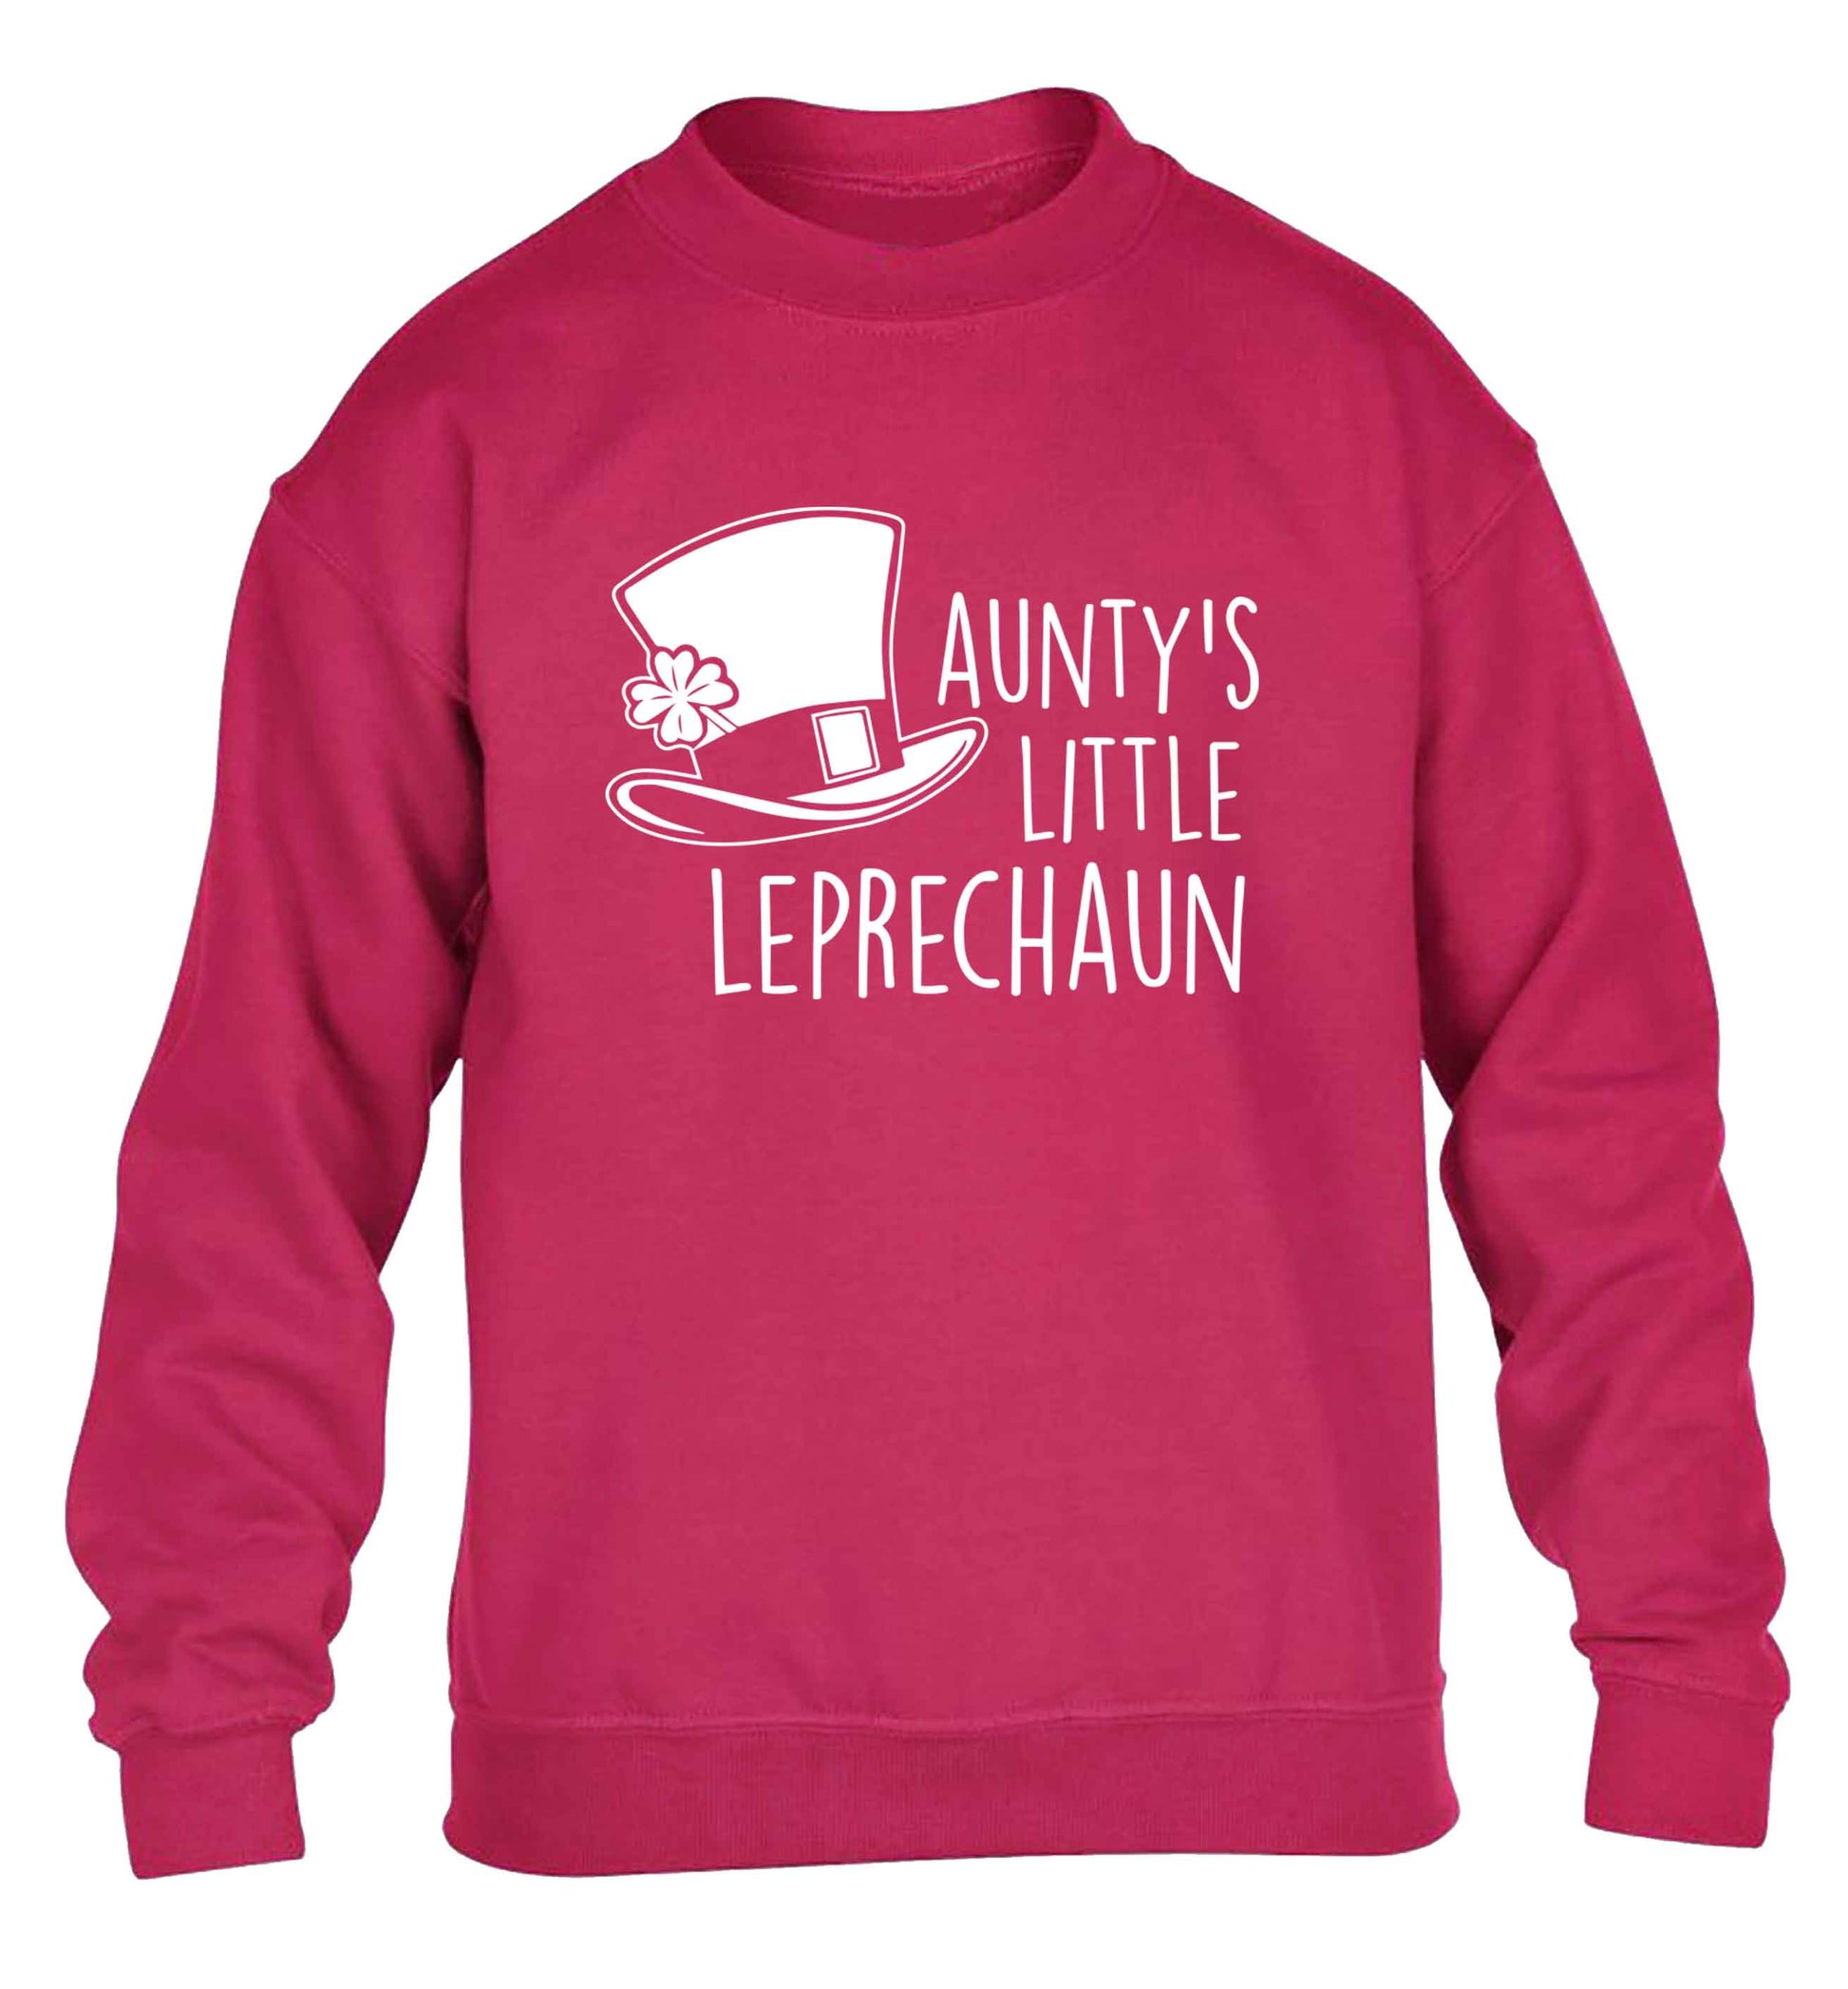 Aunty's little leprechaun children's pink sweater 12-13 Years